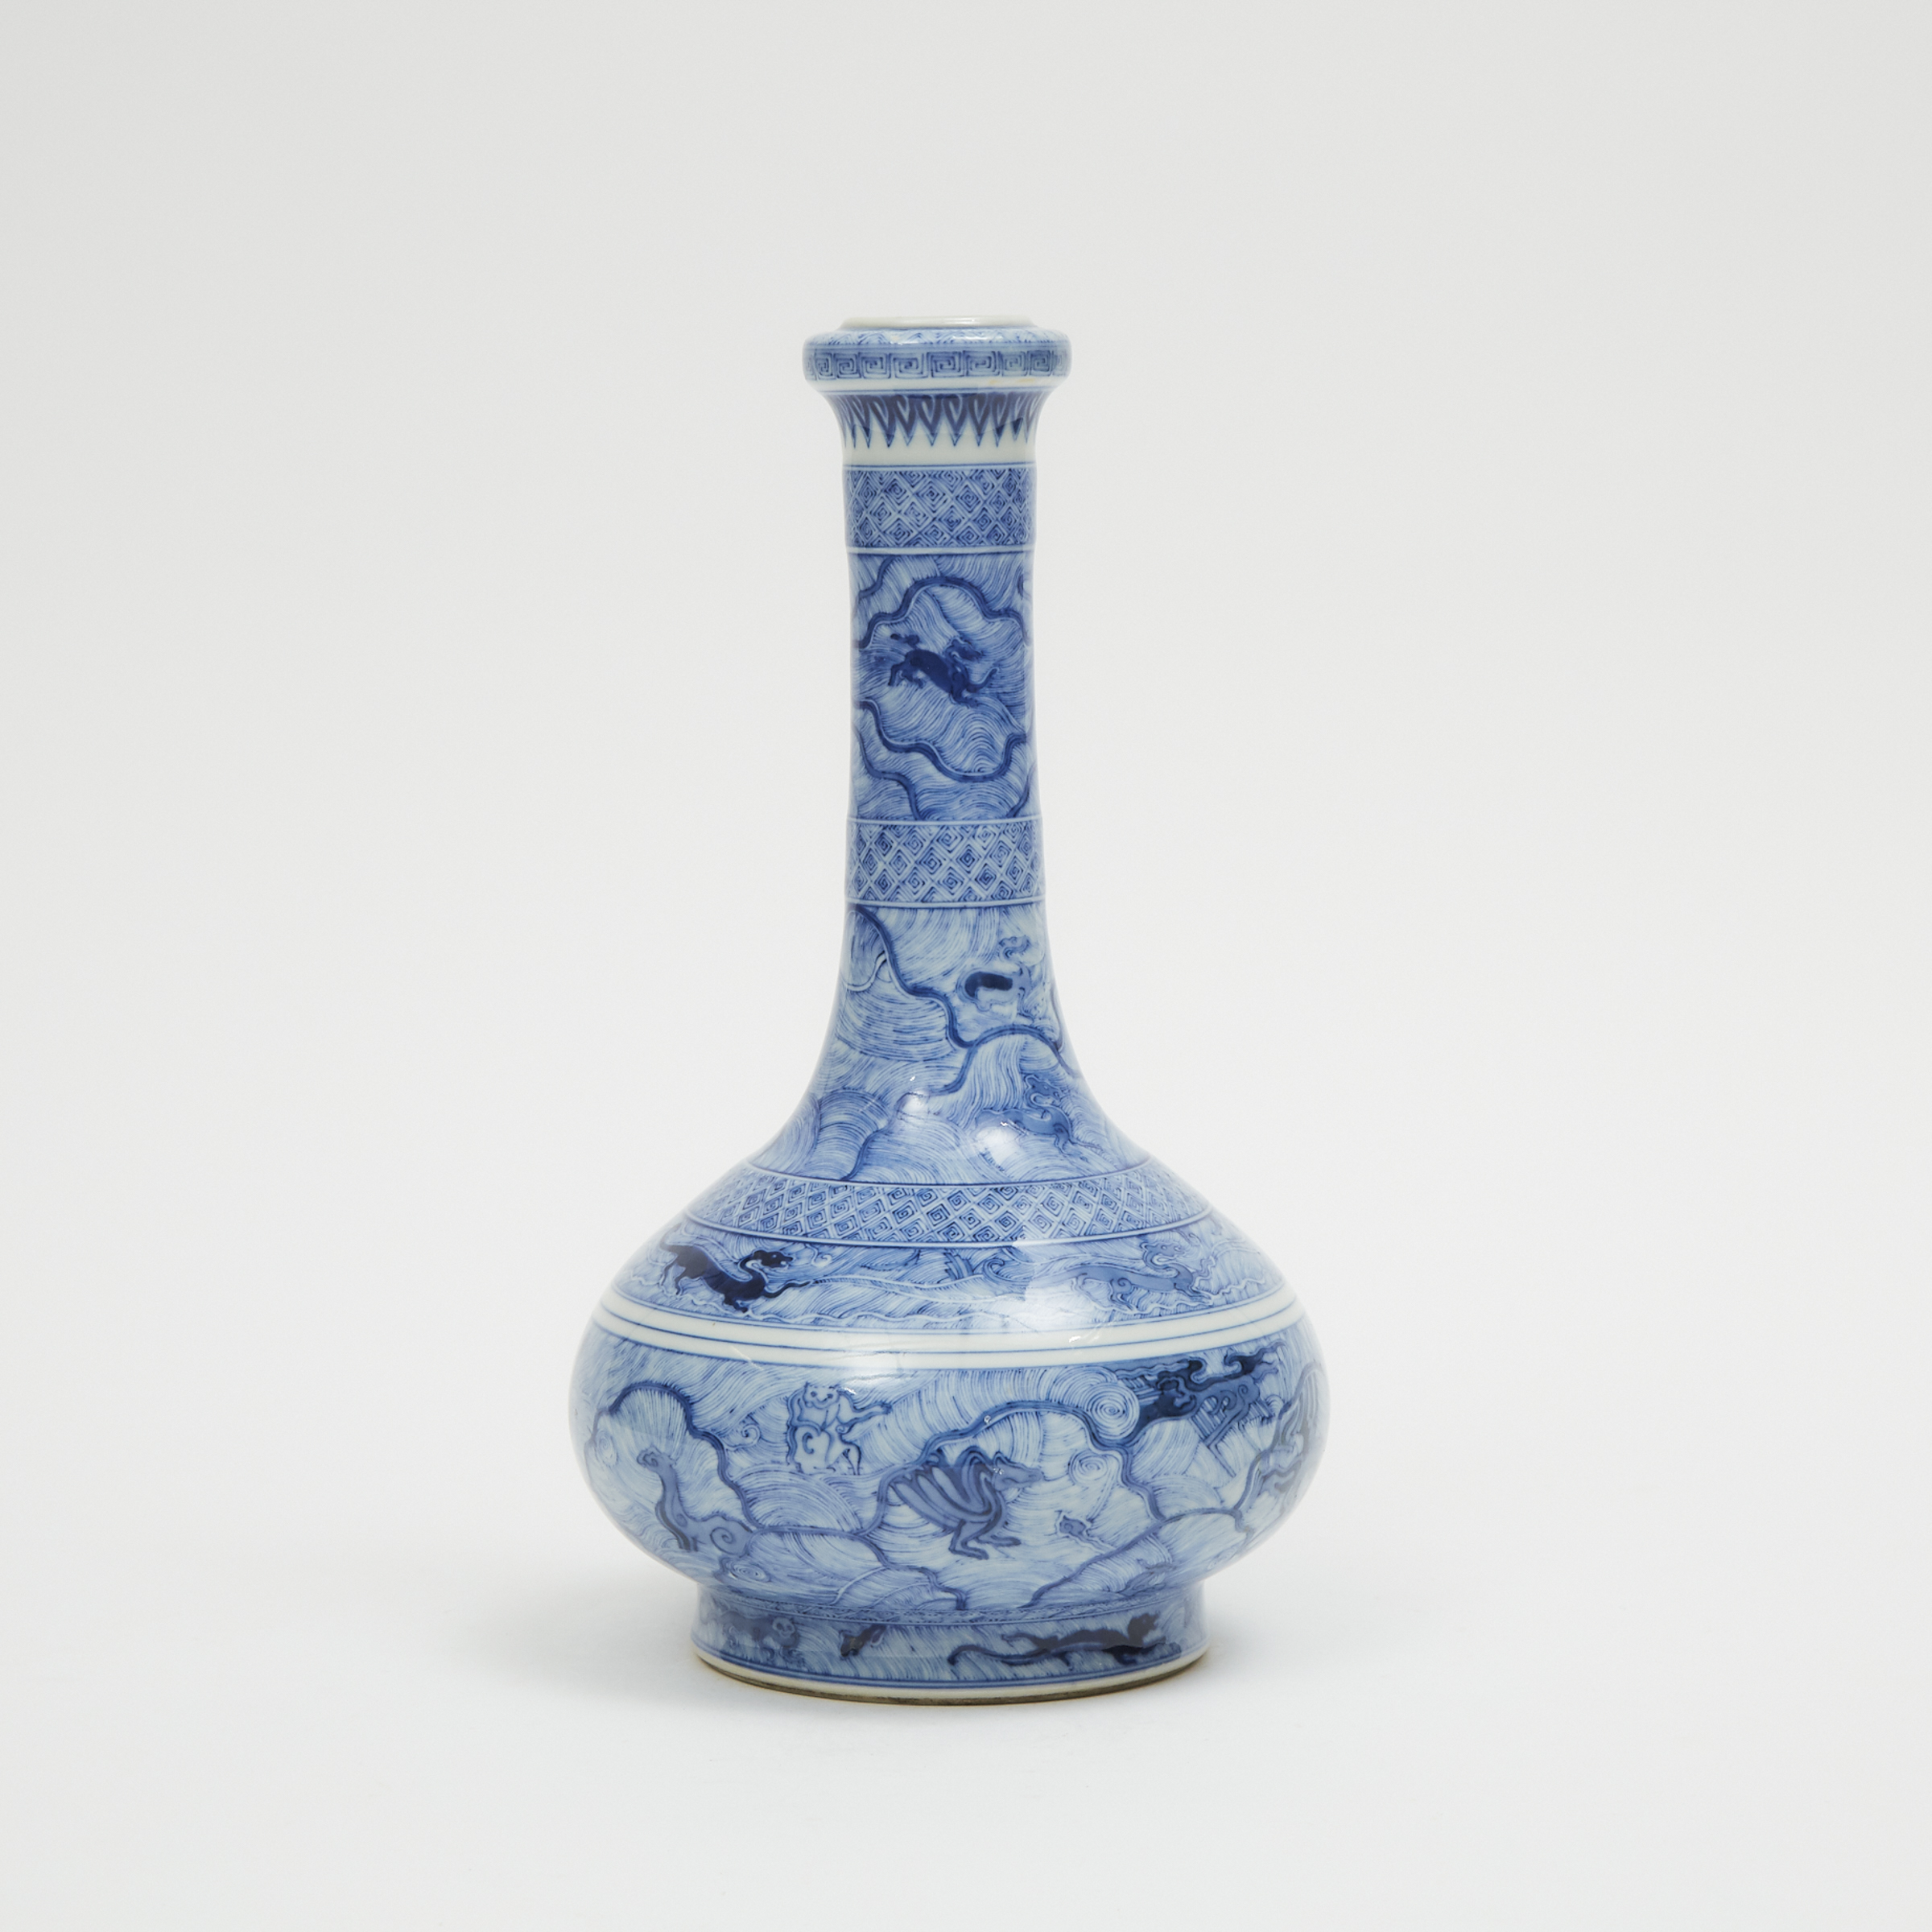 A Blue and White Bottle Vase, Kangxi Mark